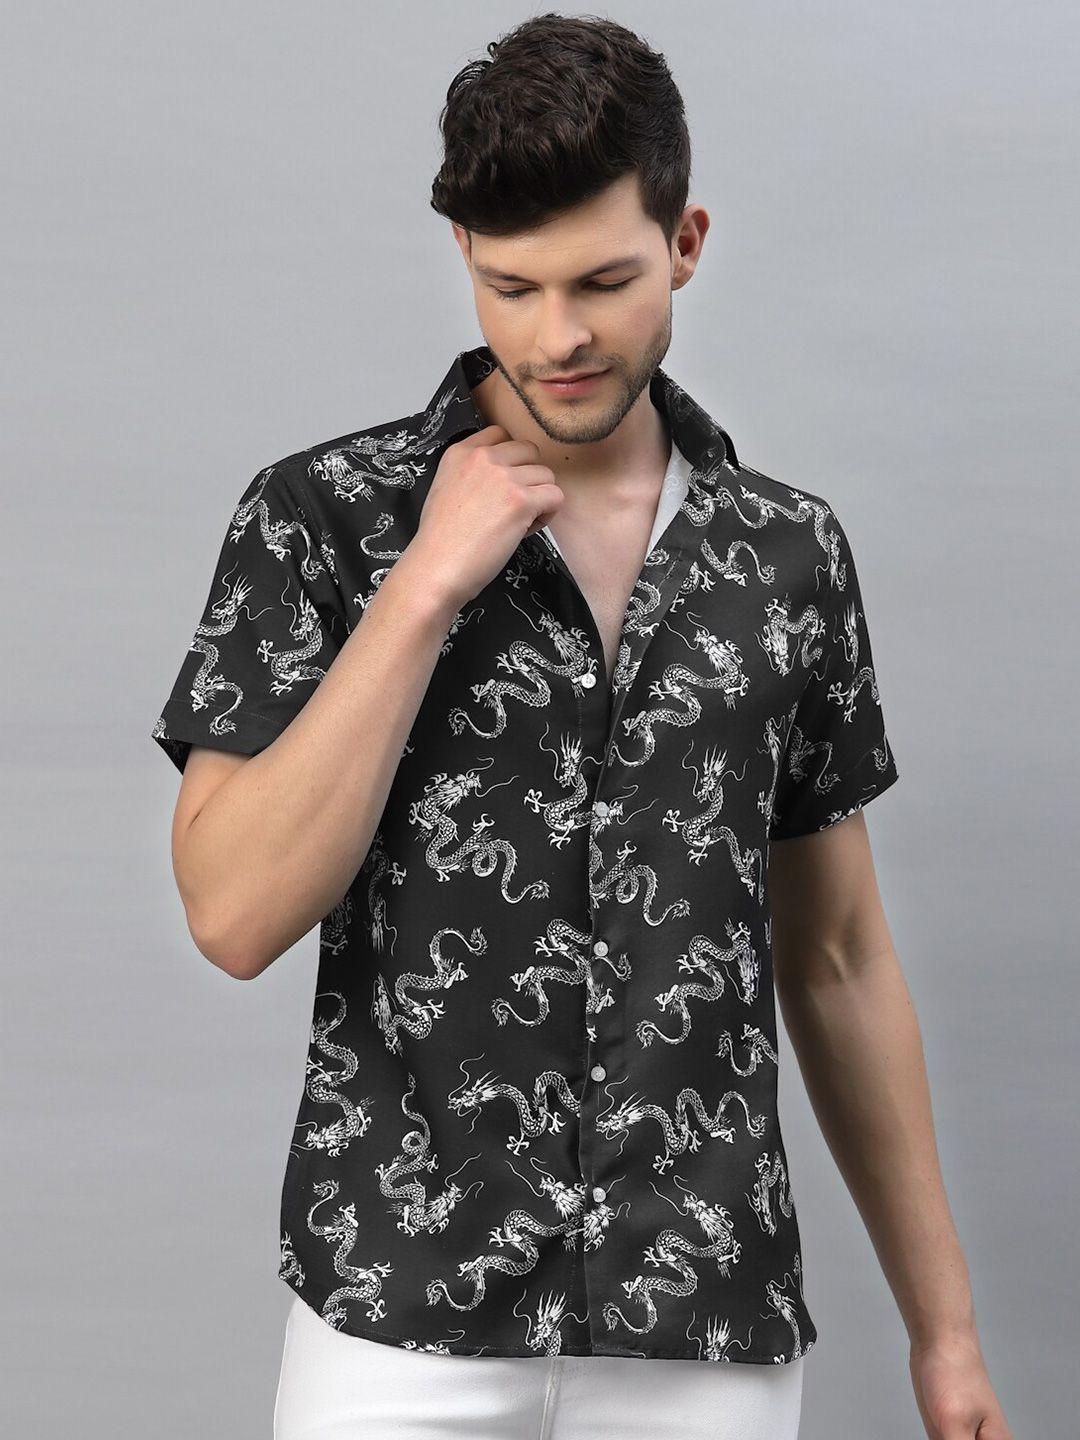 gavin paris smart slim fit conversational printed casual shirt